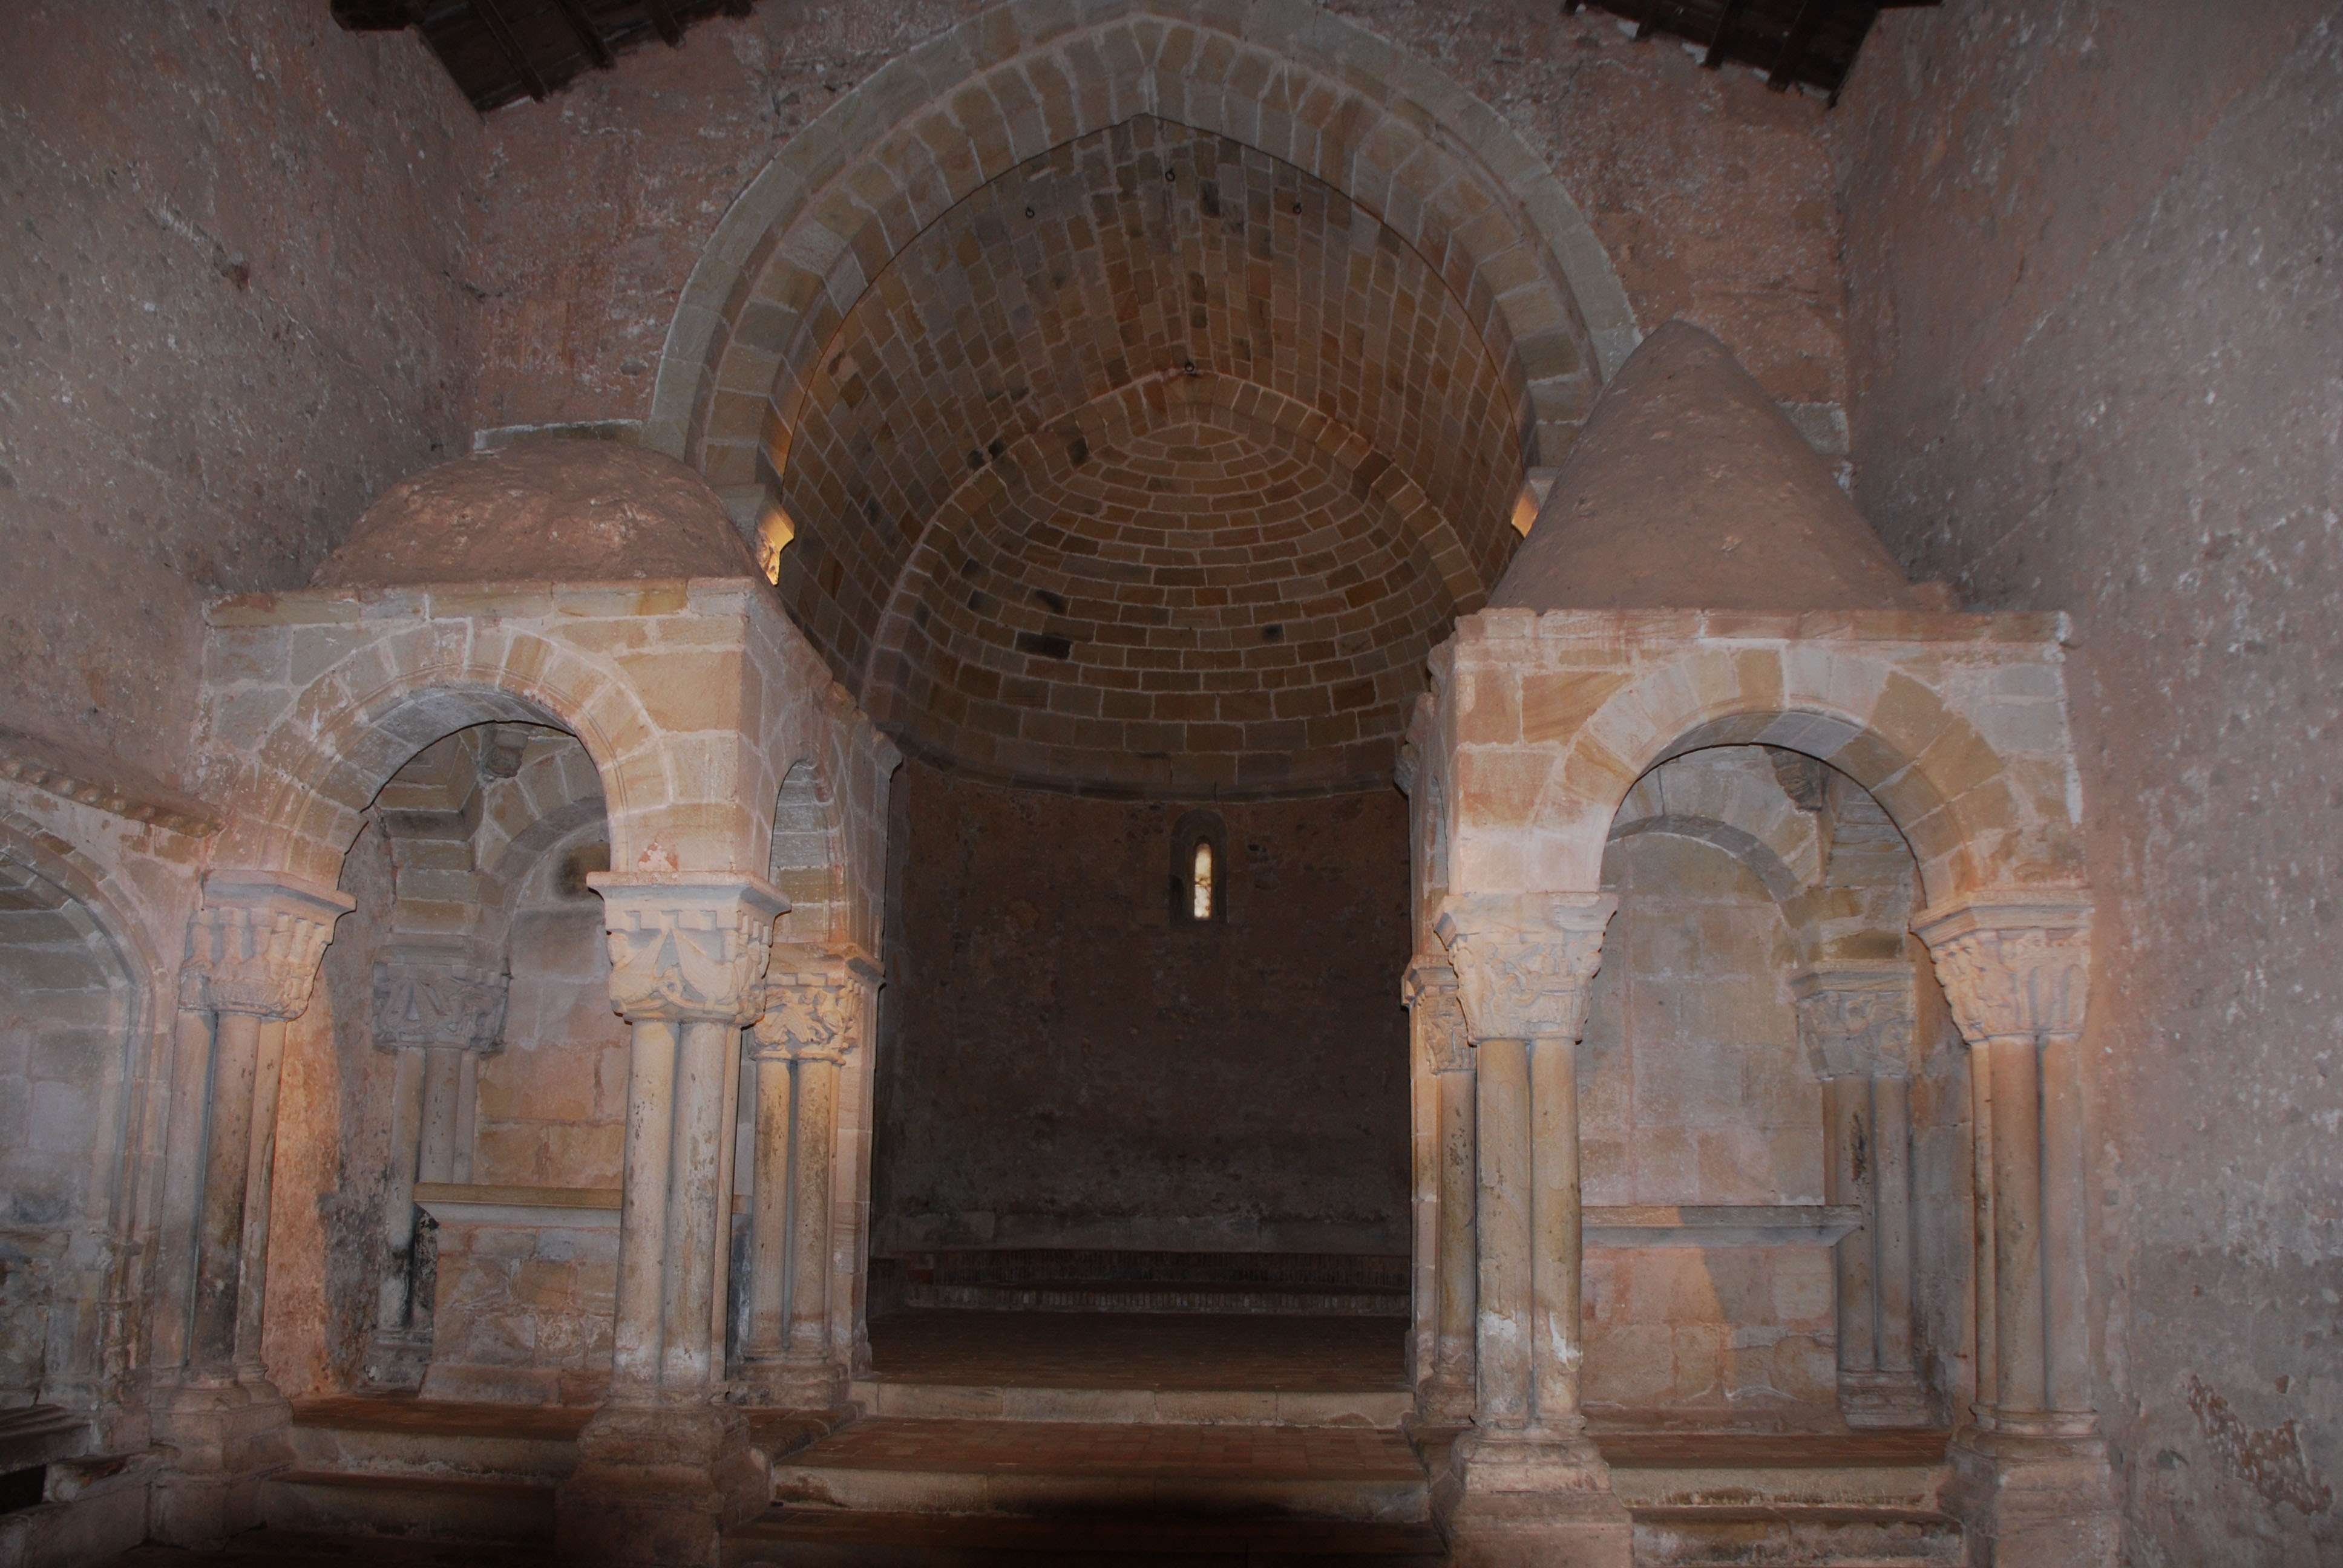 Monasterio de San Juan de Duero. Un enigma - Blogs de España - Monasterio de San Juan de Duero (1)